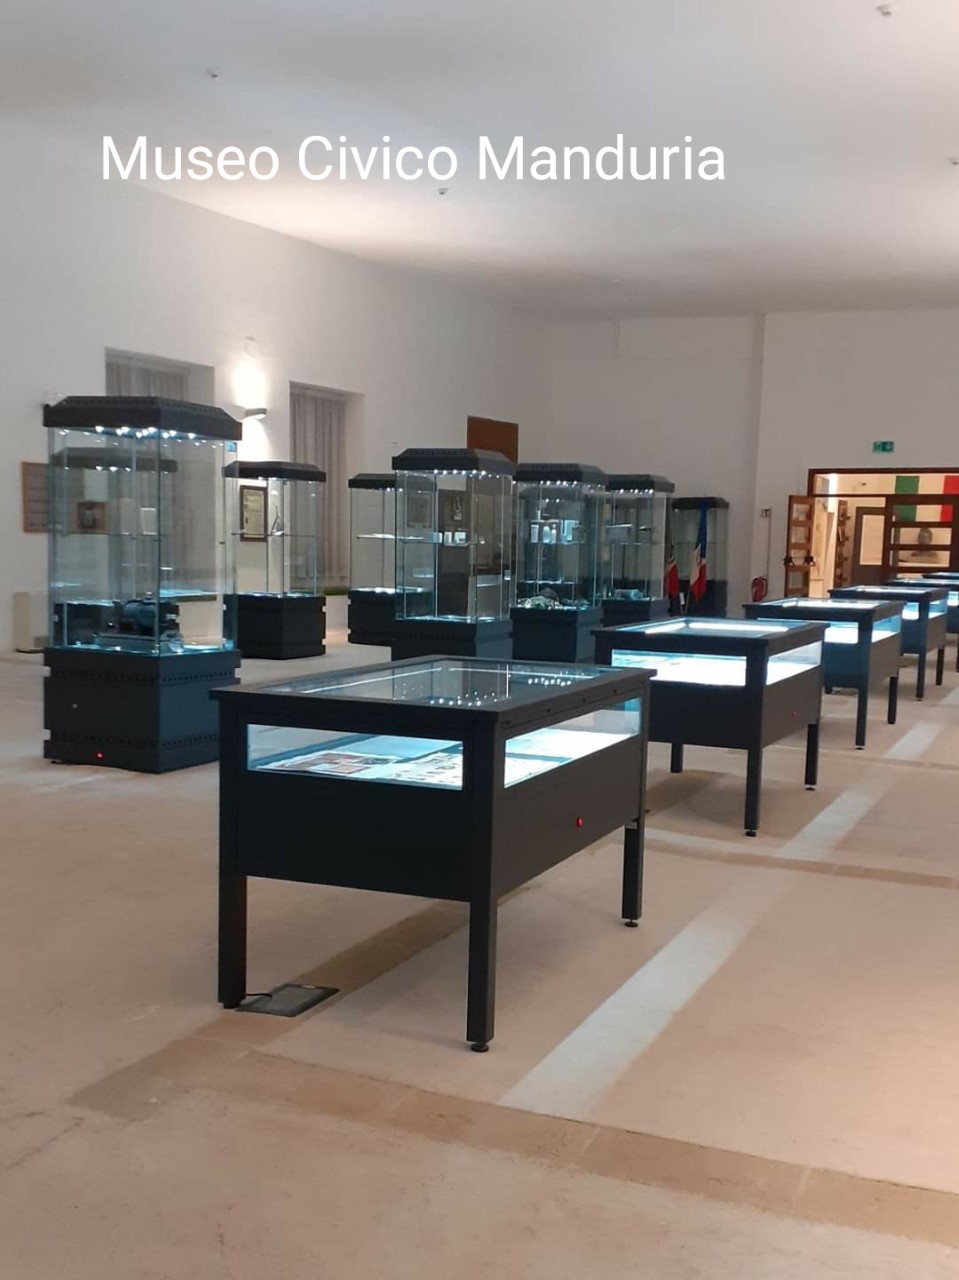 MANDURIA. Sabato  11 luglio 2020, riaprirà al pubblico il Museo Civico